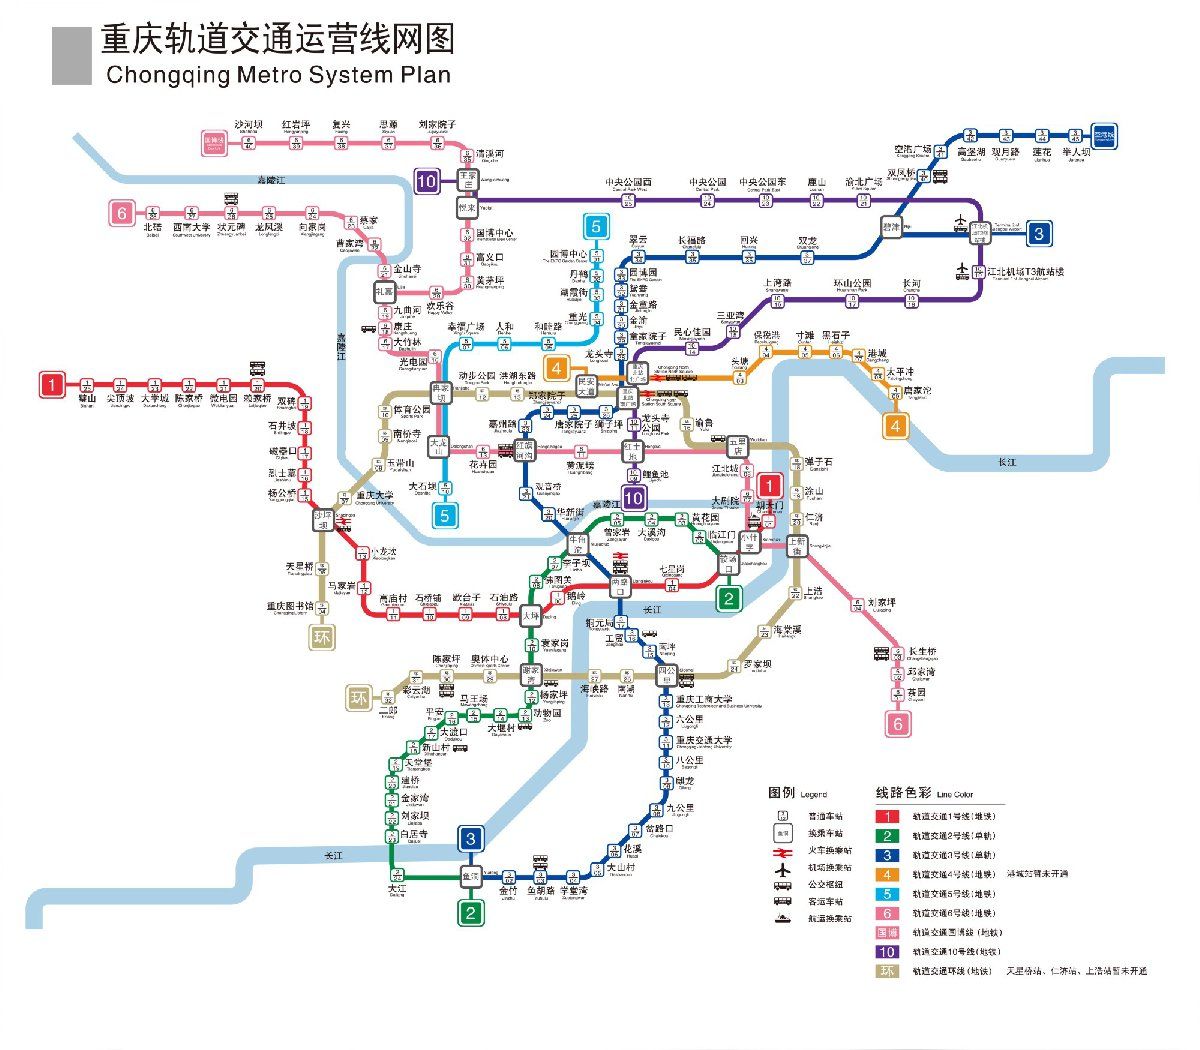 点击这里查看原图拓展:重庆地铁环线剩余段1月20日即将开通二郎(不含)